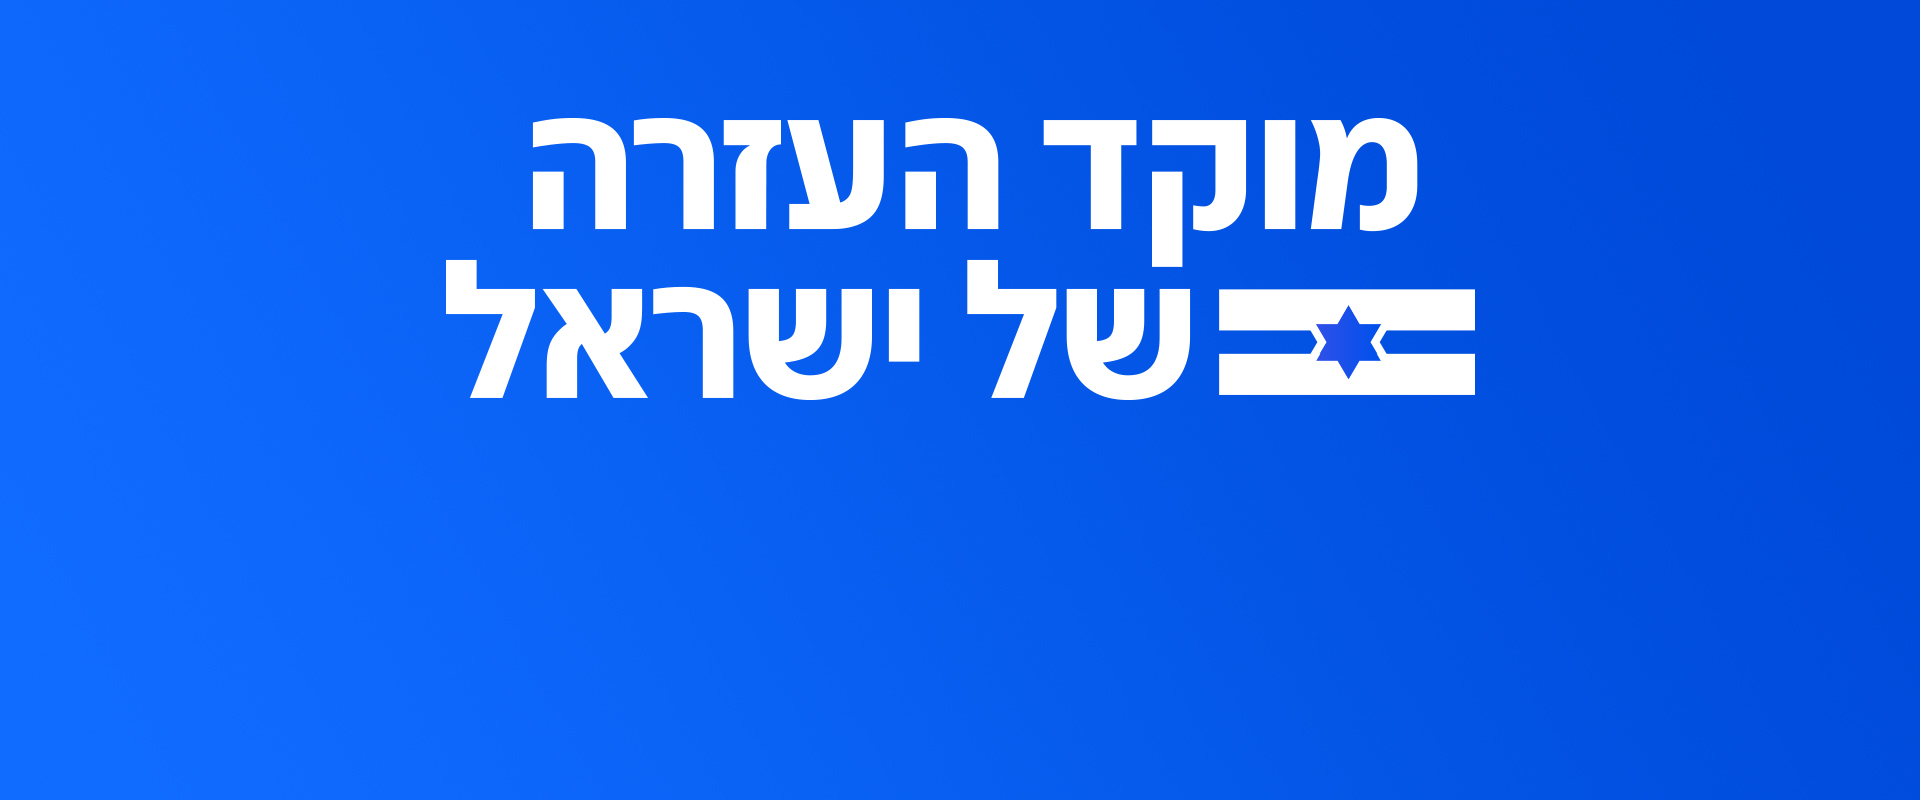 N12 - מוקד העזרה של ישראל